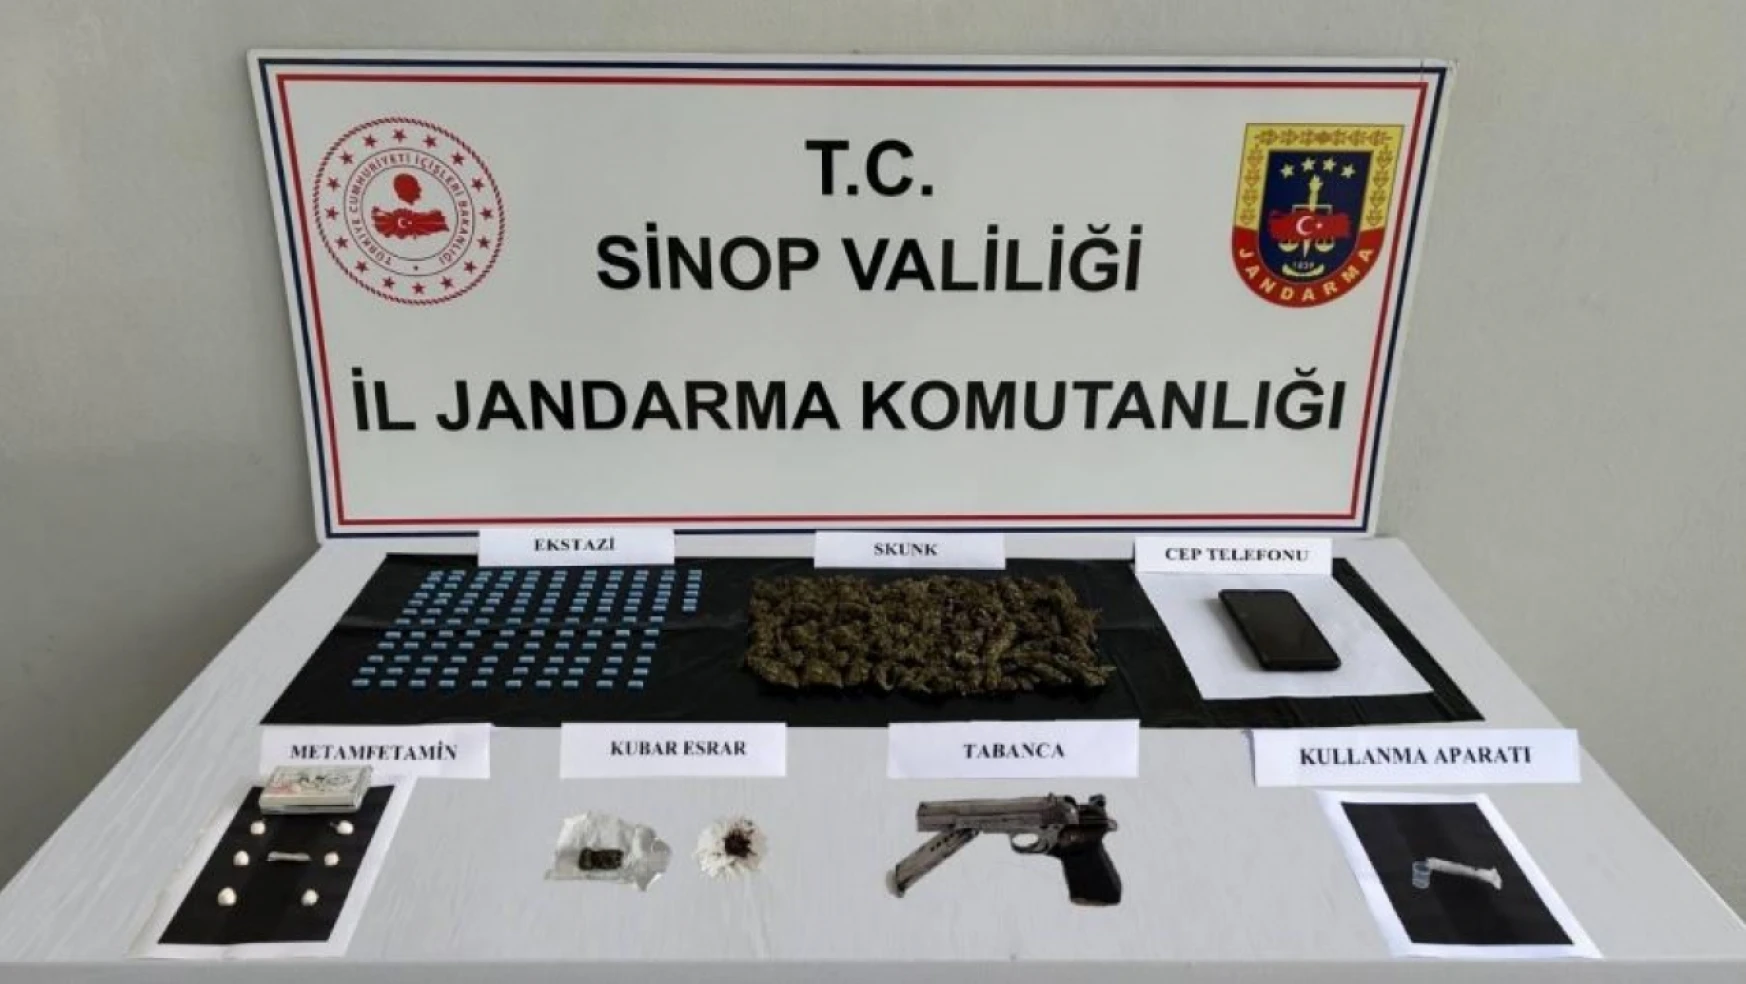 Sinop polisi uyuşturucu tacirlerine göz açtırmıyor